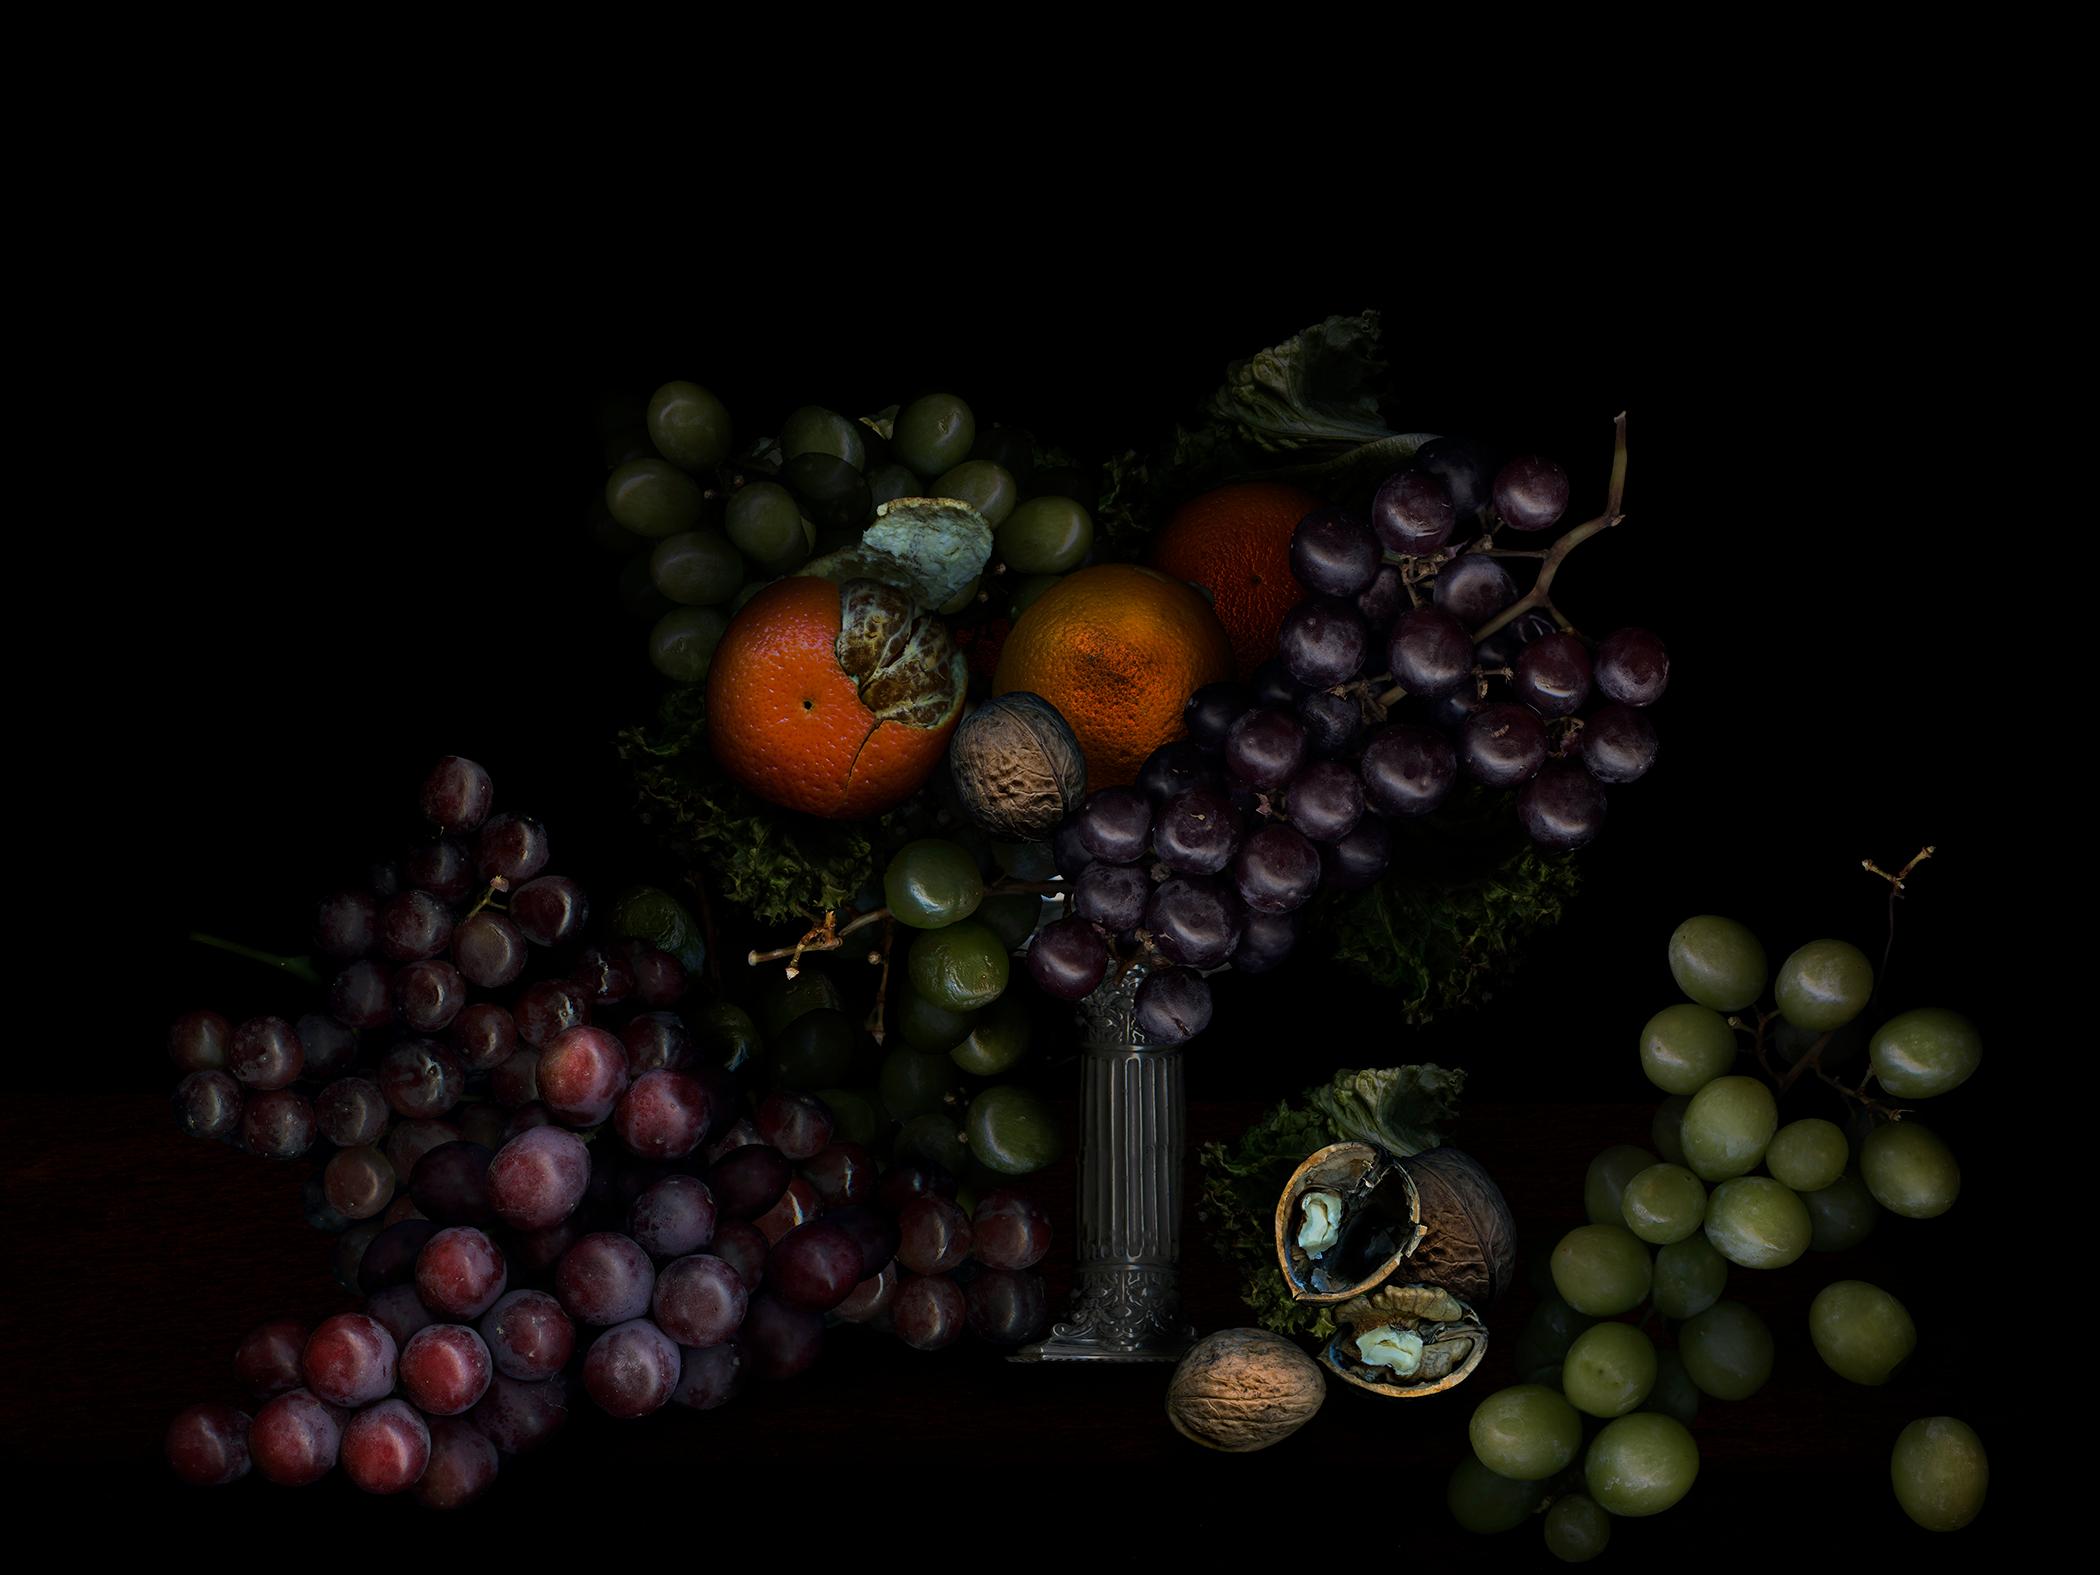 Zoltan Gerliczki Color Photograph – Obst aus meinem Garten #7. Früchte. Digitale Collage-Farbfotografie